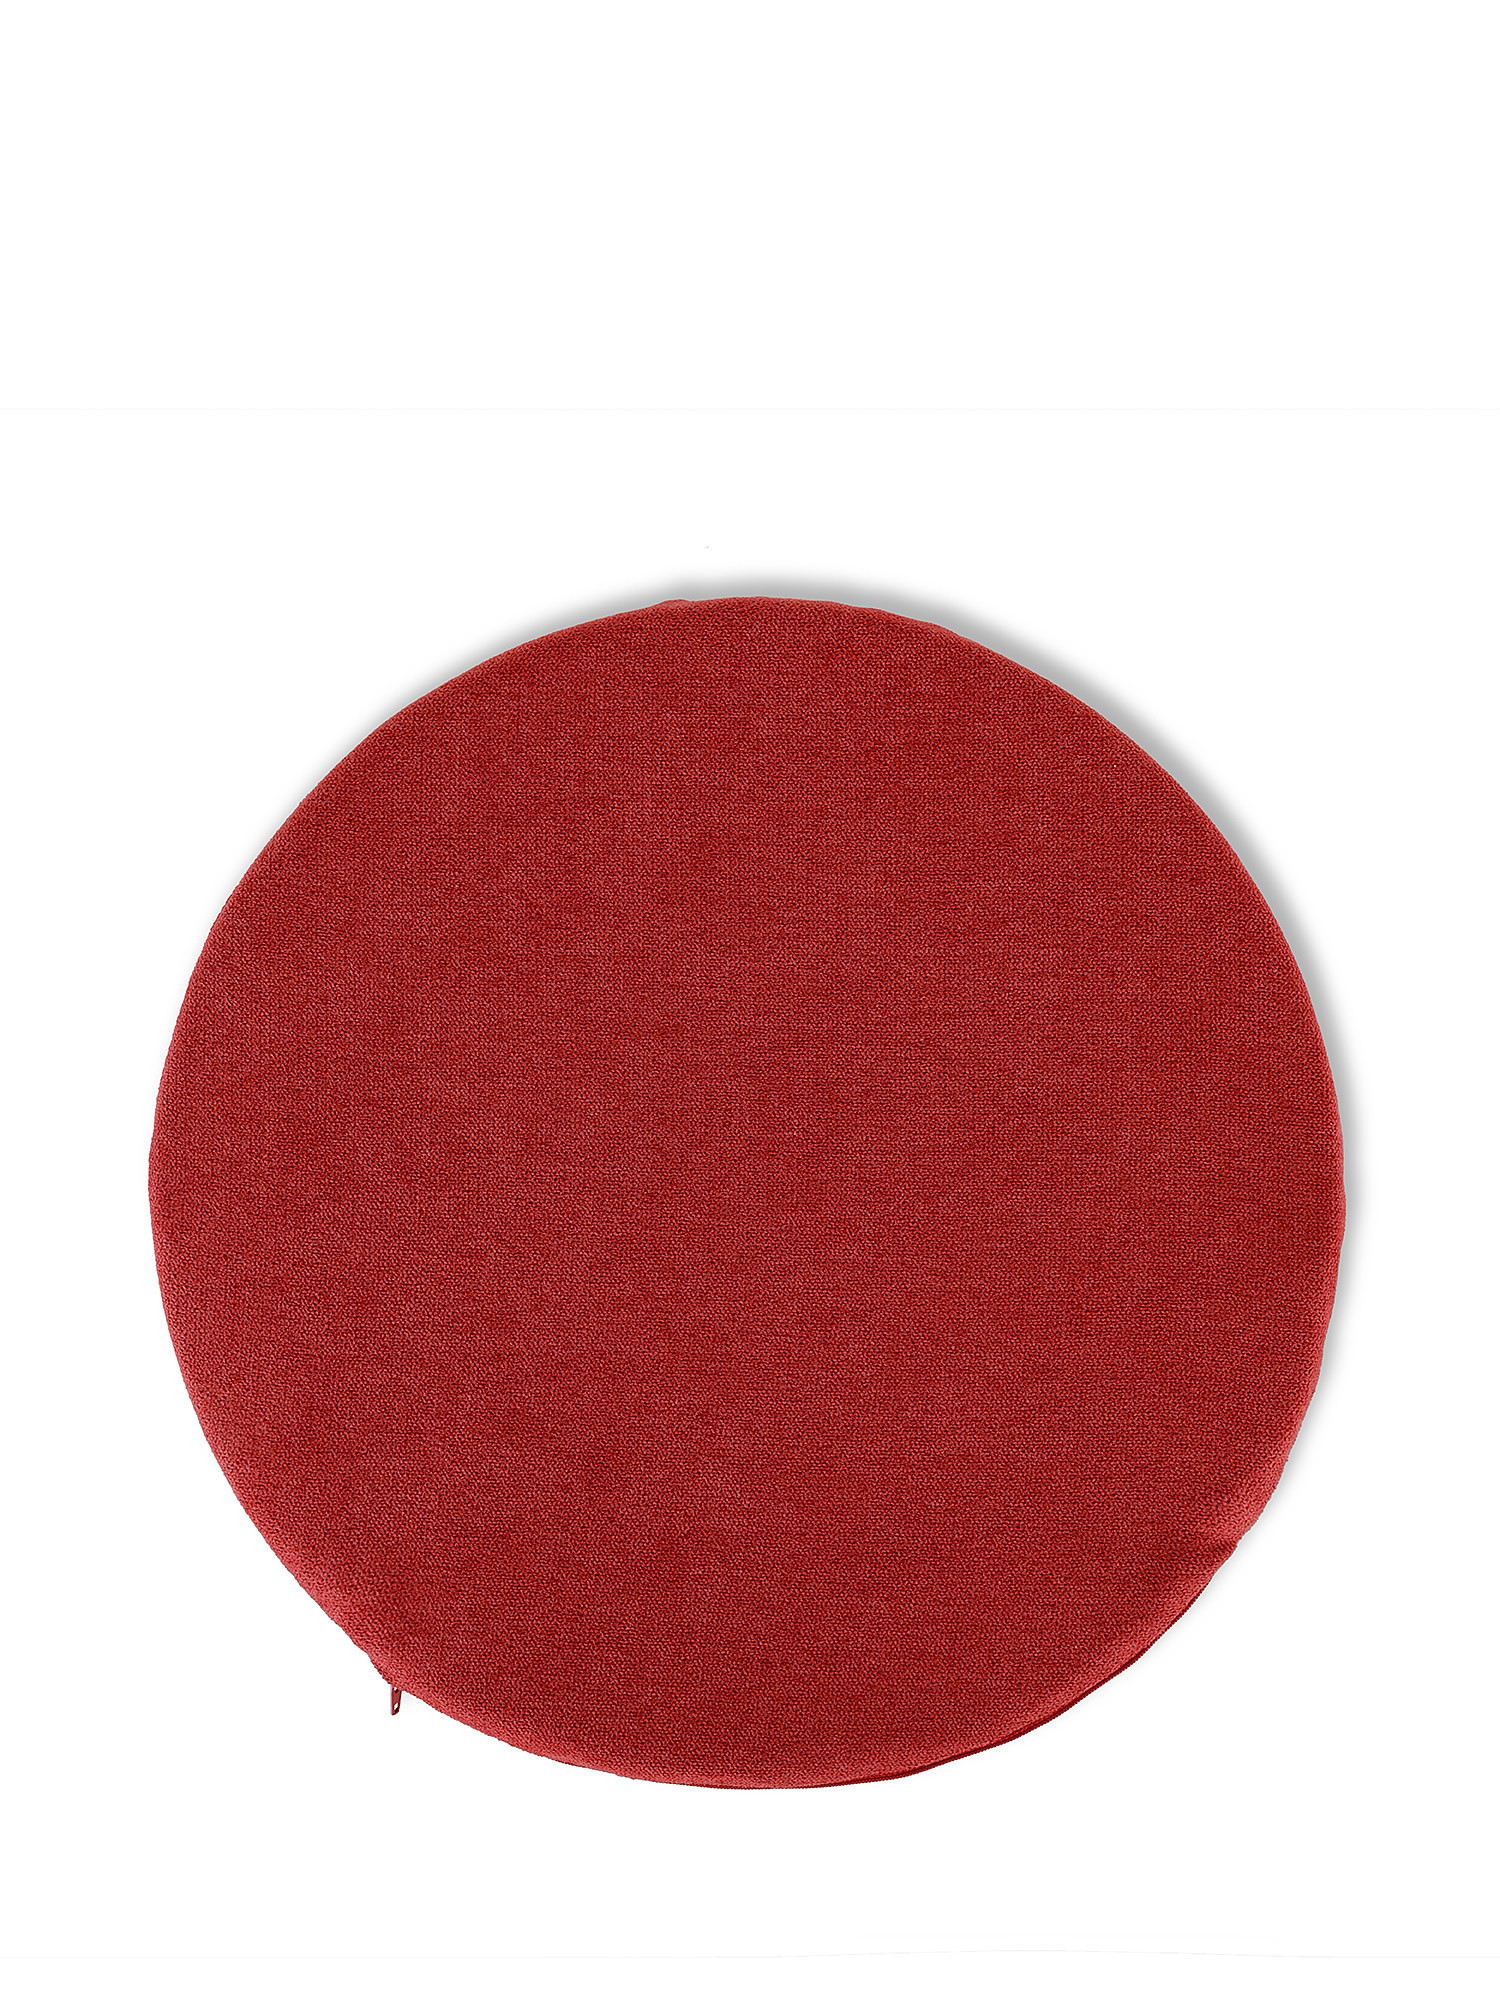 Однотонная хлопковая подушка на стул Coincasa, красный